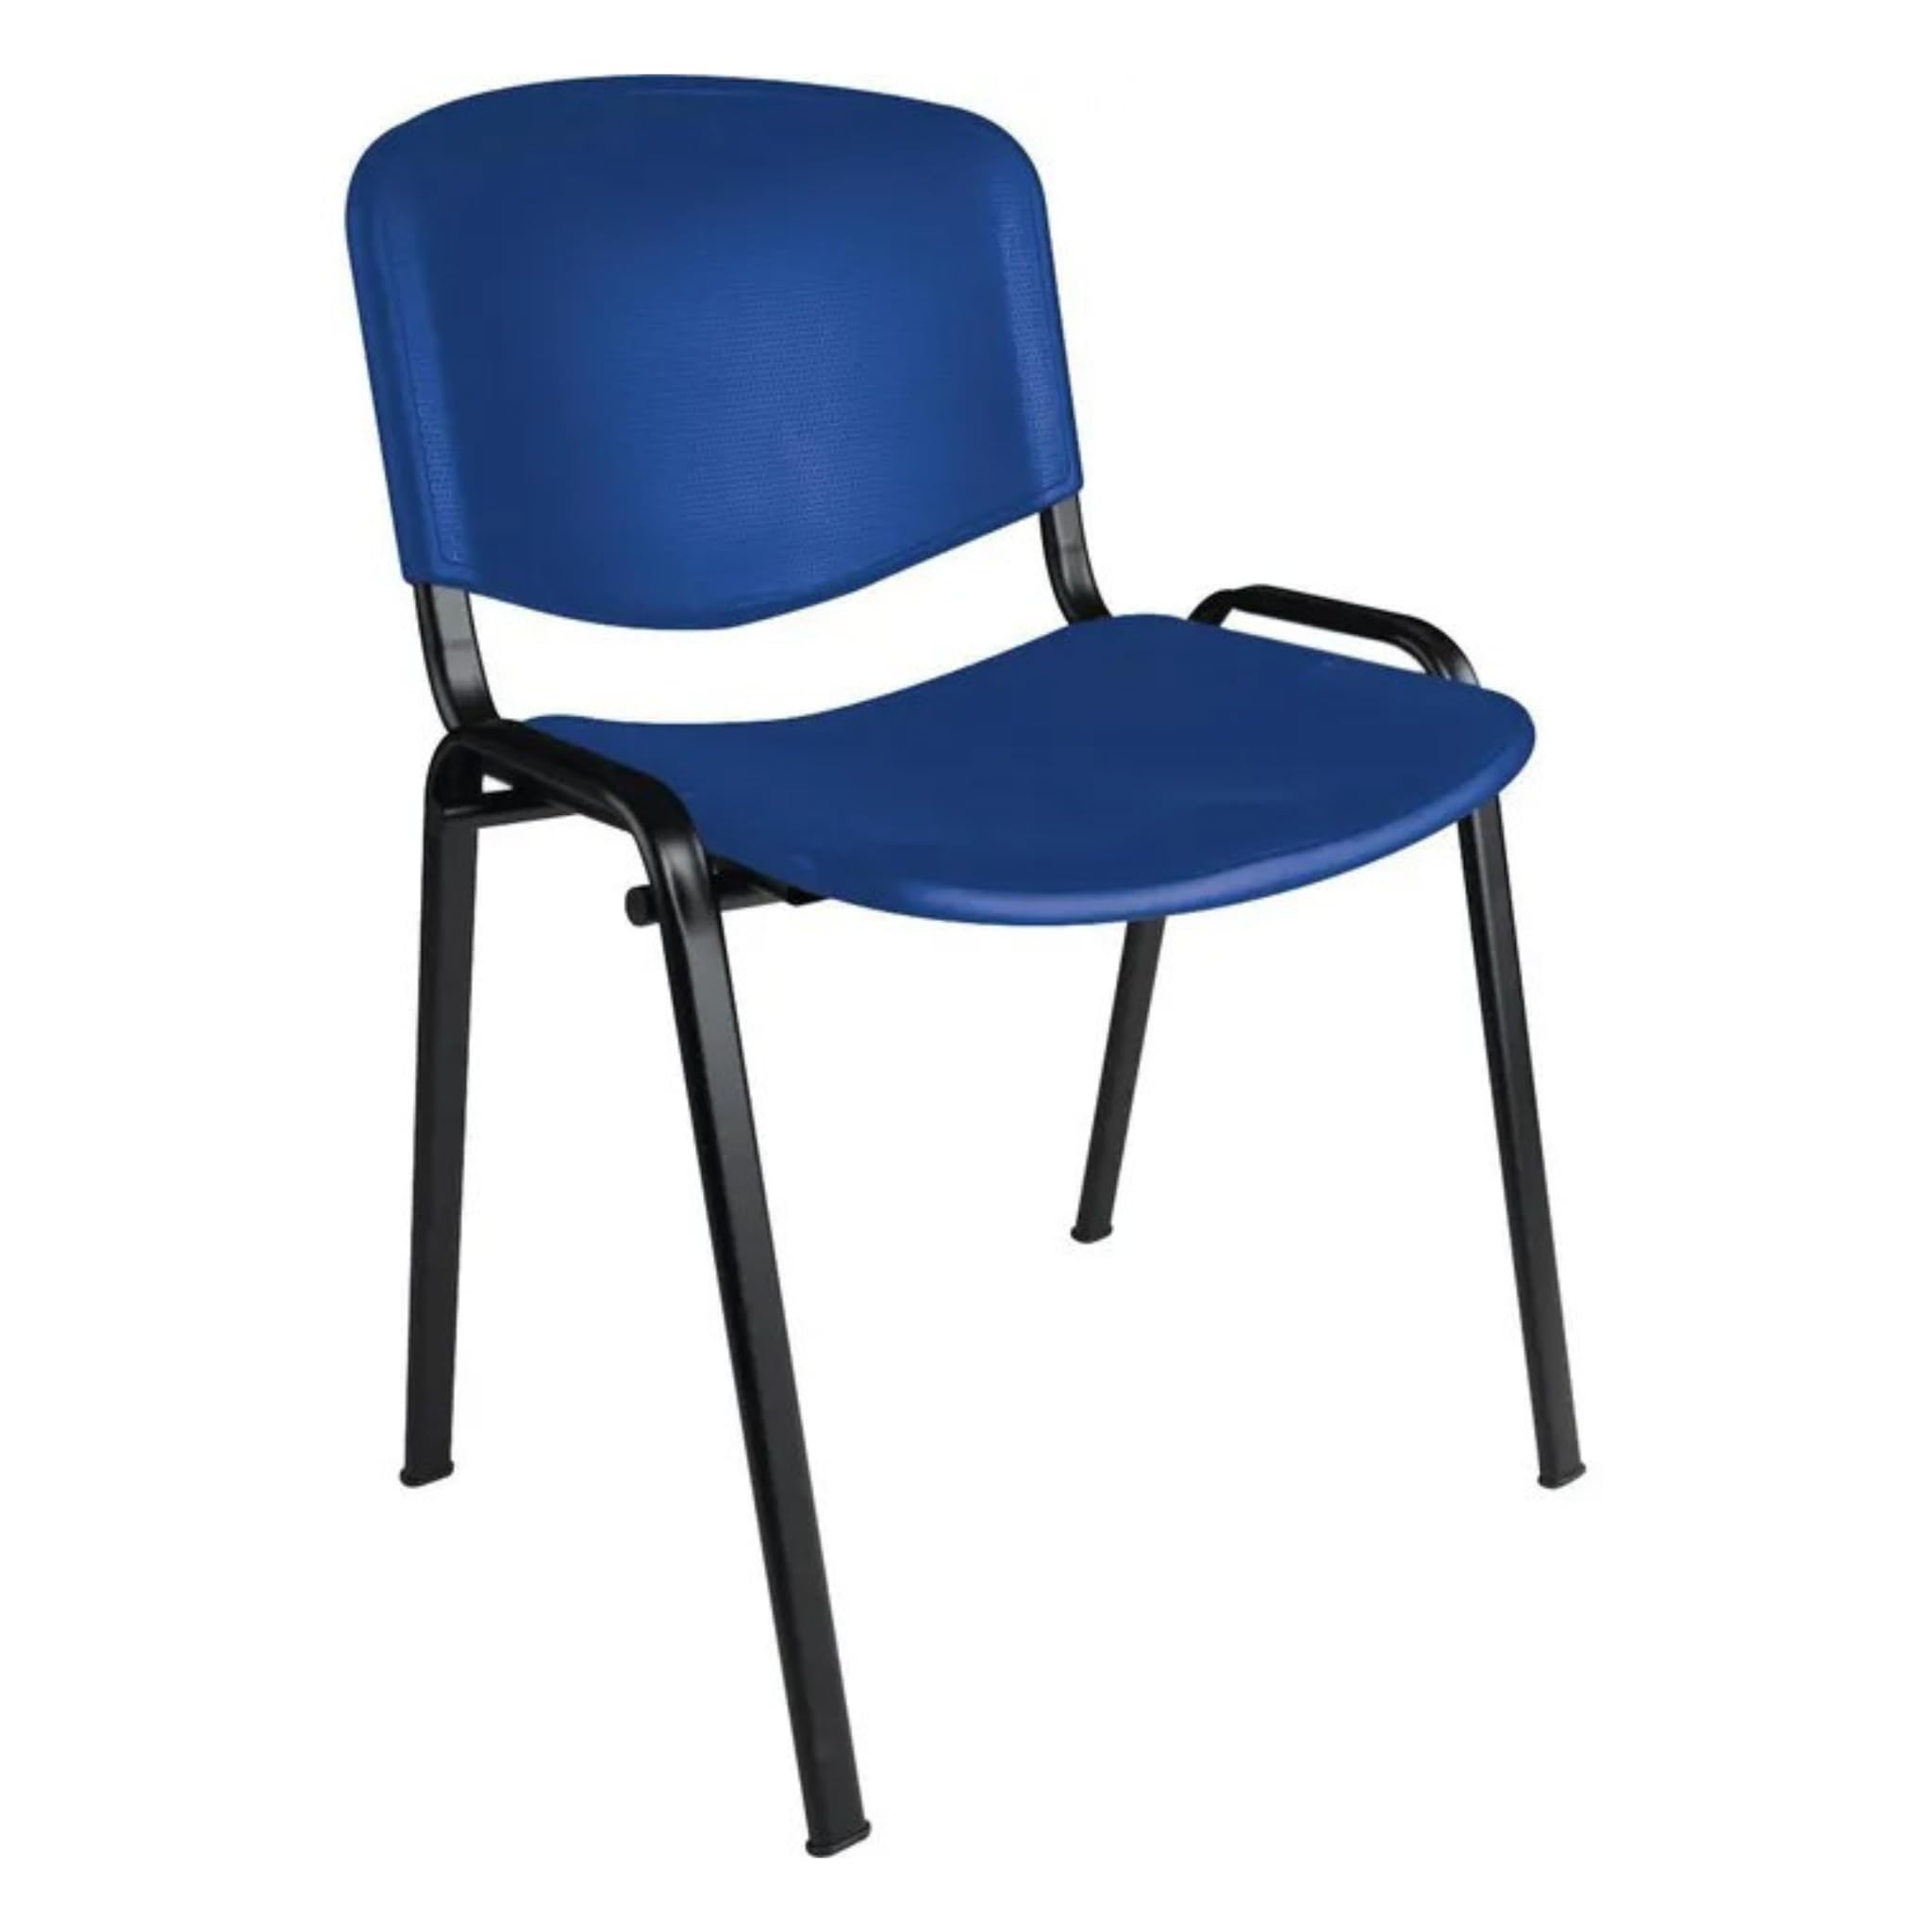 Büro & More Besucherstühle, stapelbarer Konferenzstuhl, mit Sitz und Rückenlehne aus Kunststoff. (Blau)